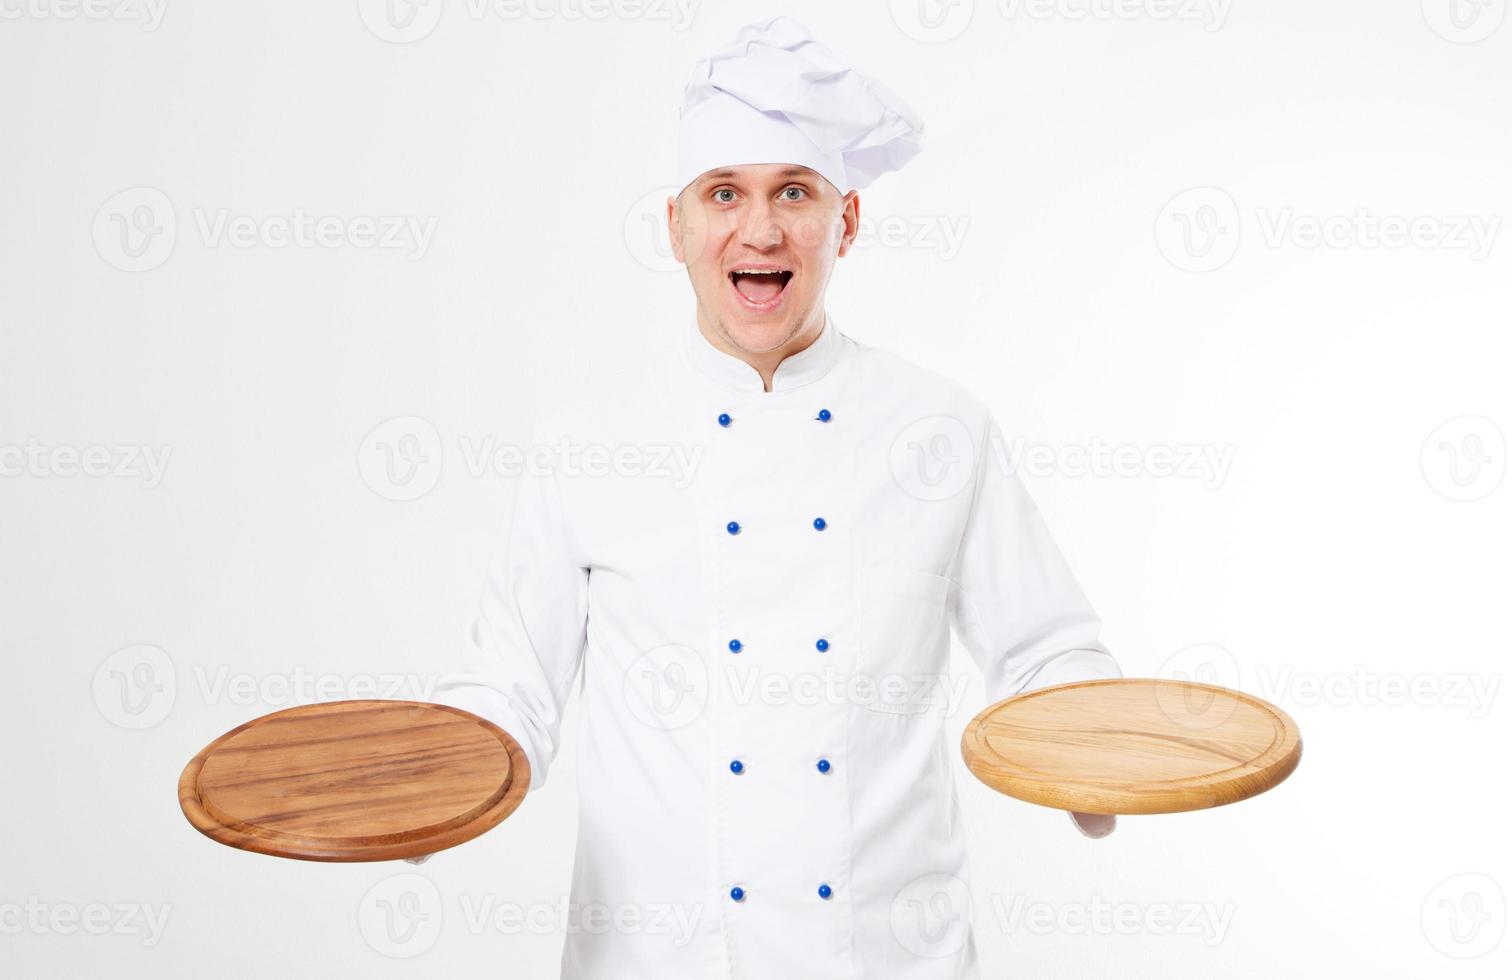 Chef masculino sonriente emocional con mesa de pizza en blanco en la mano, concepto de comida sabrosa foto